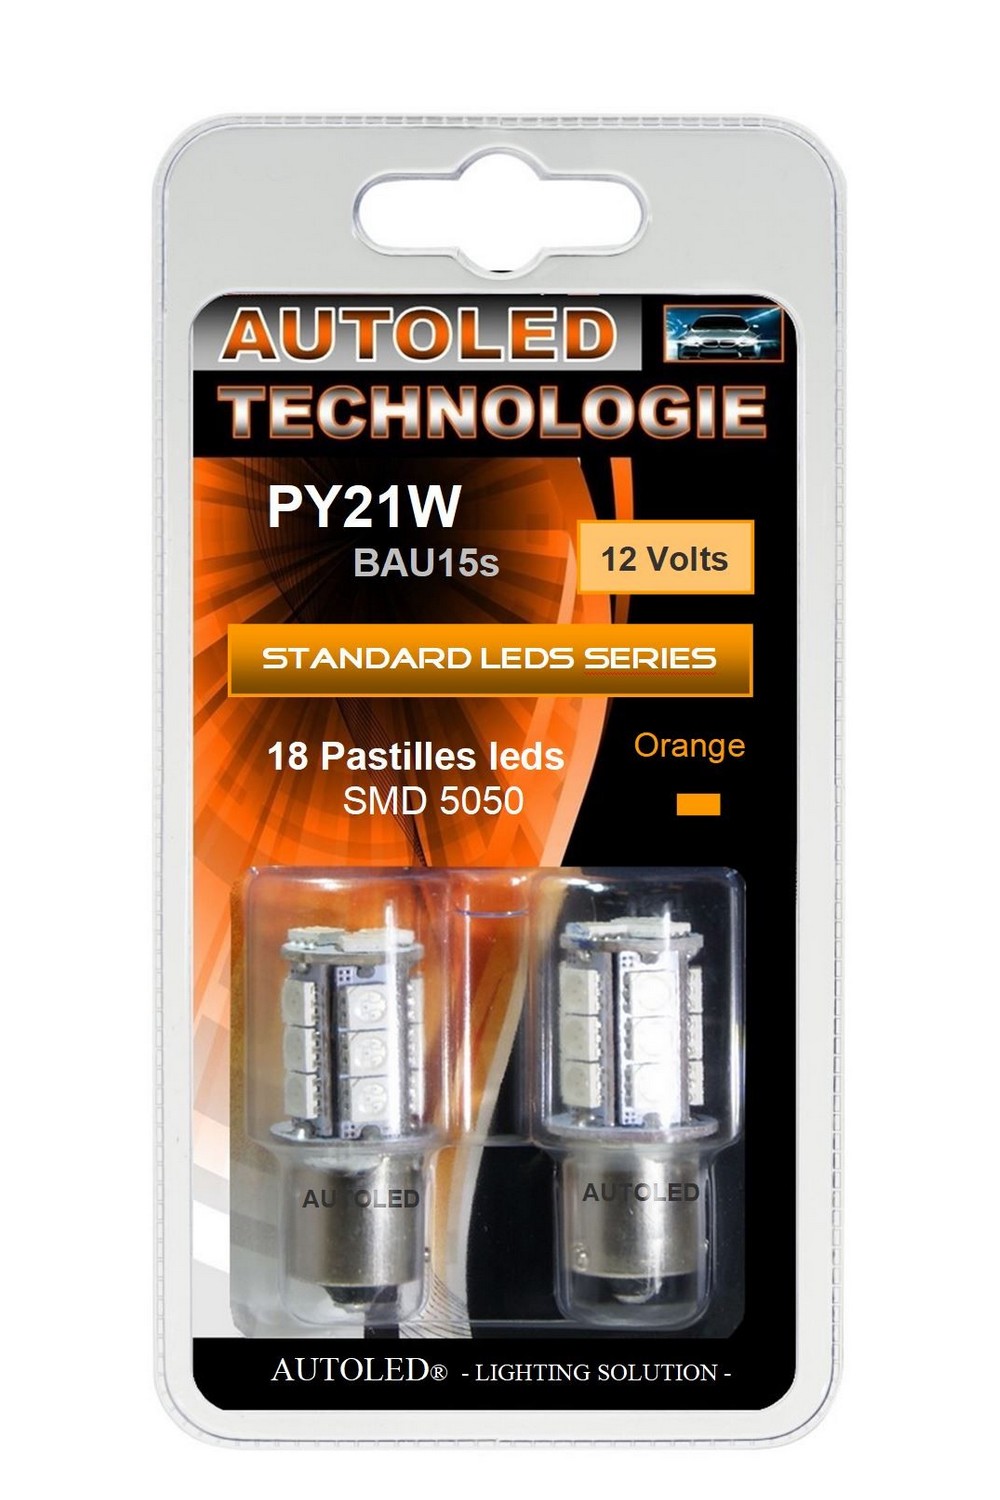 ampoule-leds-py21w-bau15s-18-pastilles-leds-orange-utilisation-clignotant-autoled-ef-0035-2